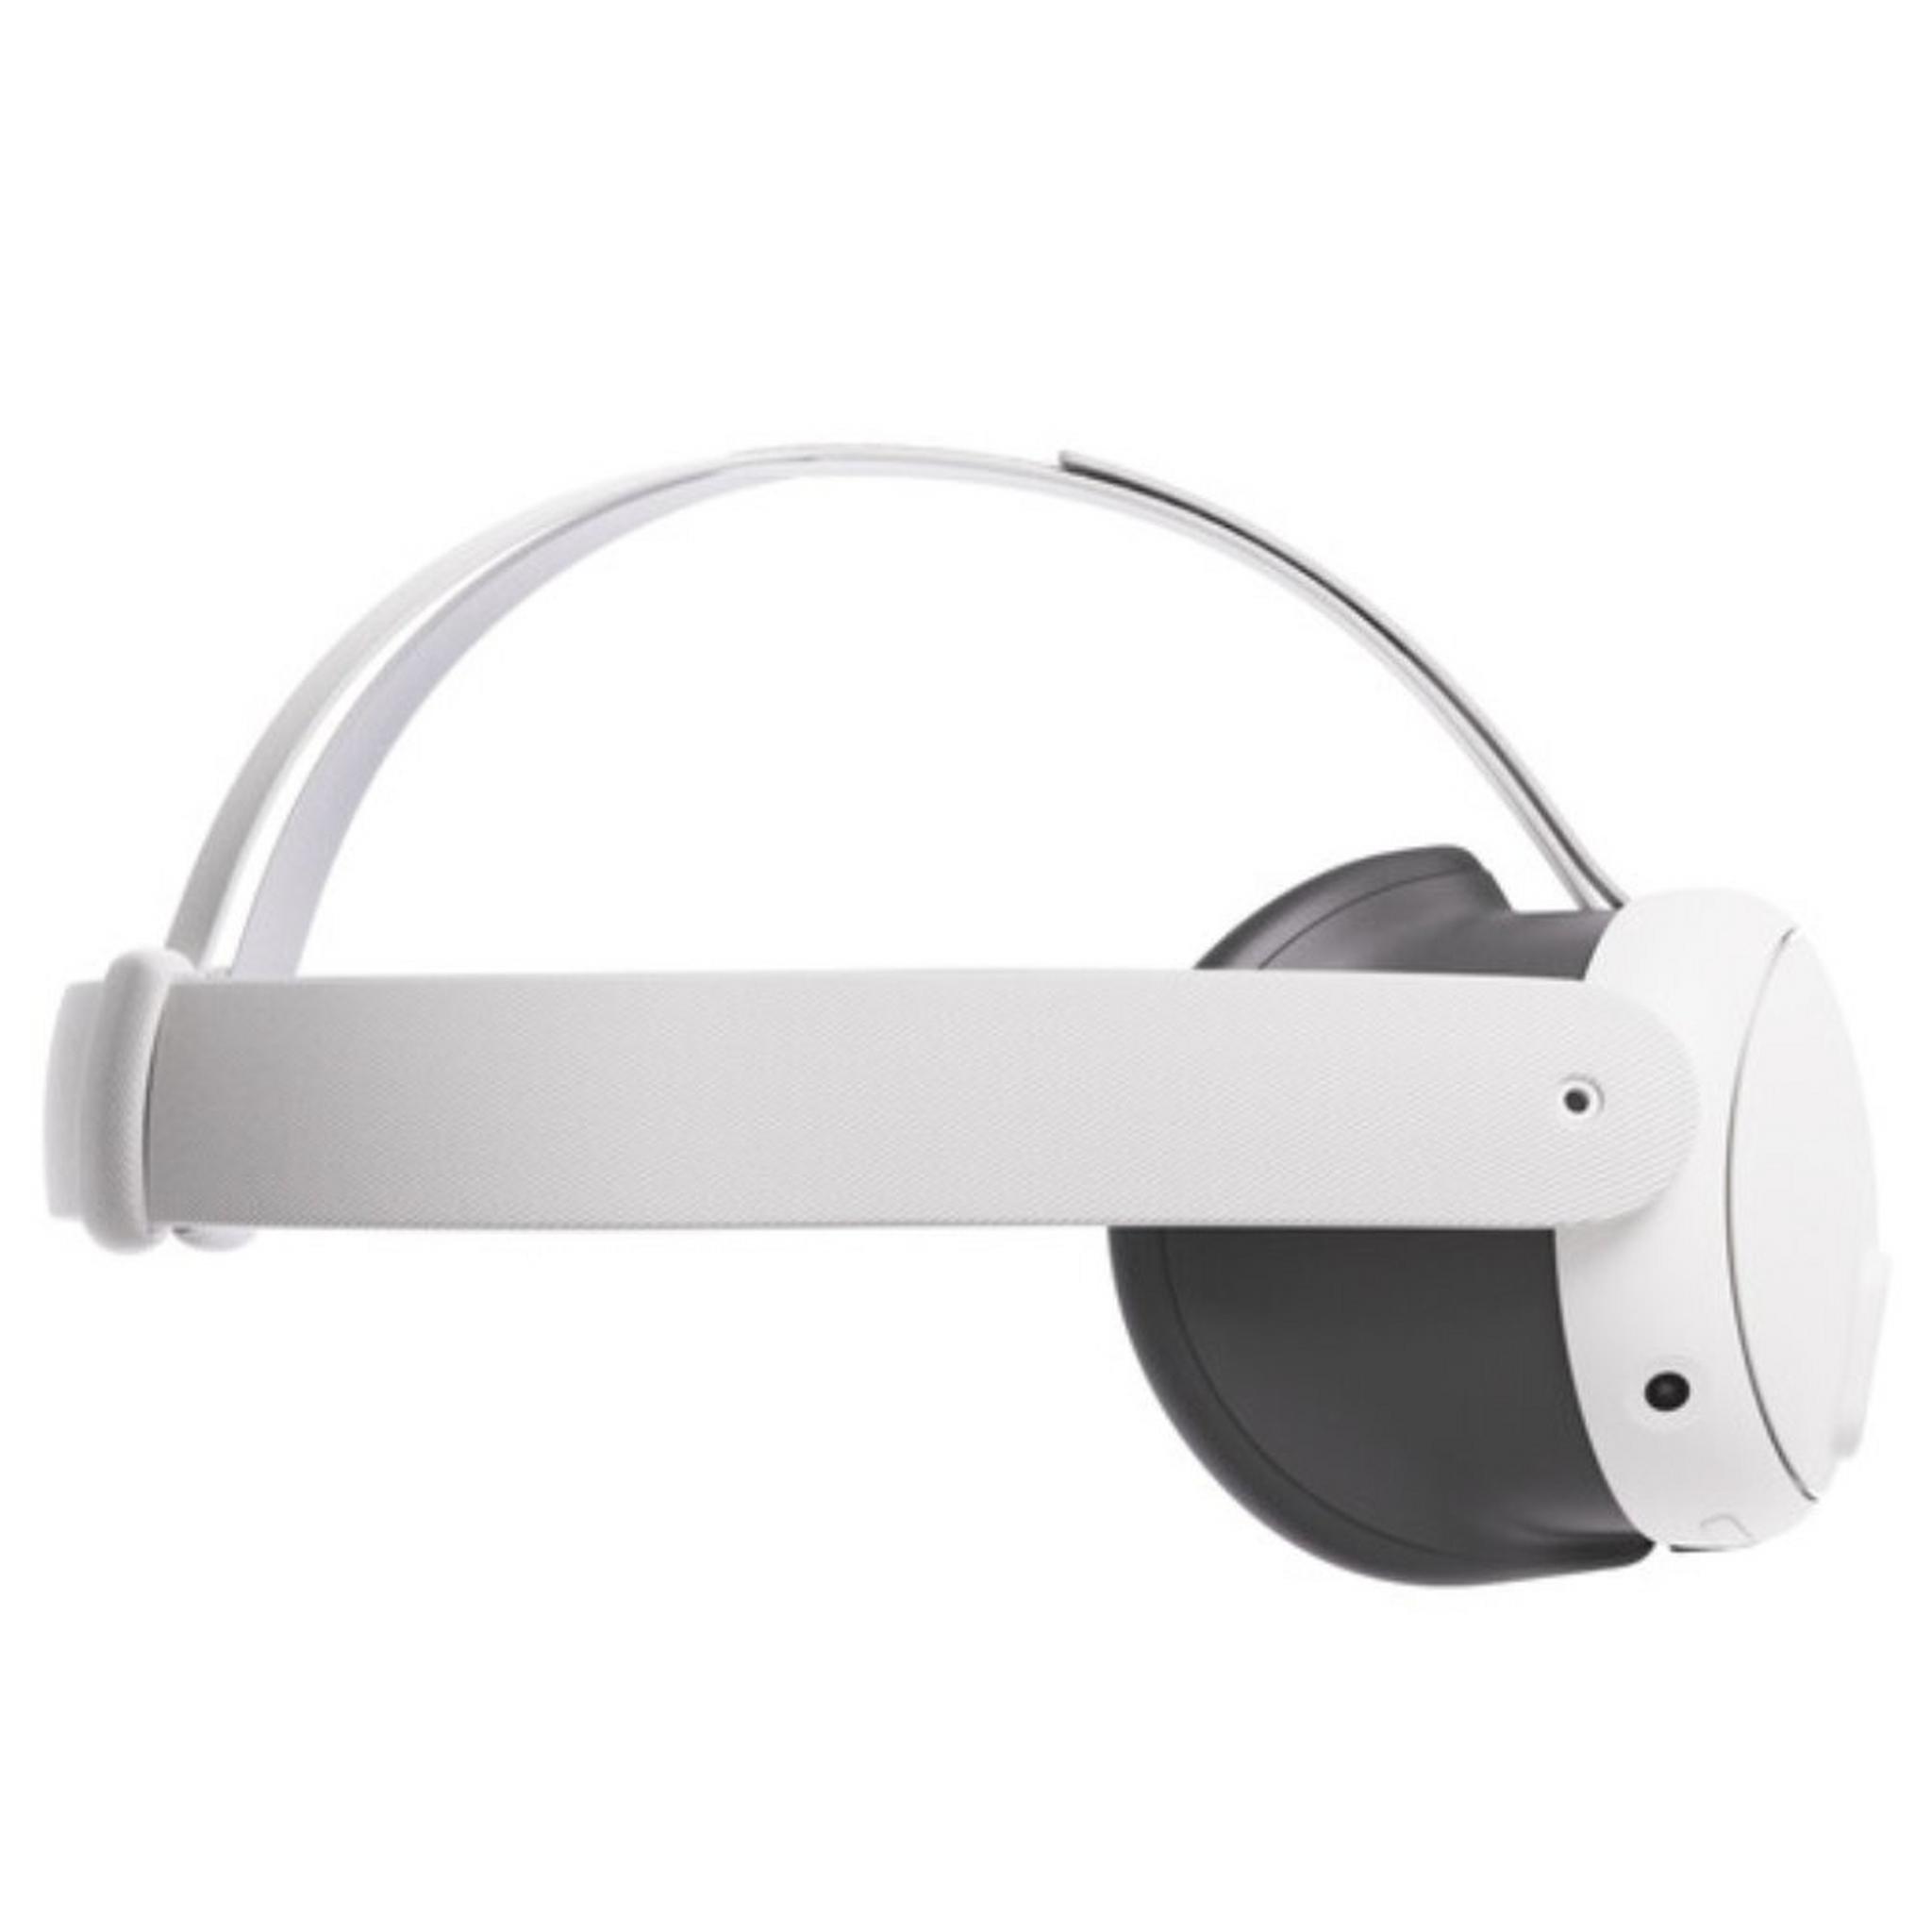 نظارة الواقع المختلط كويست 3 من ميتا، 128 جيجابايت – أبيض